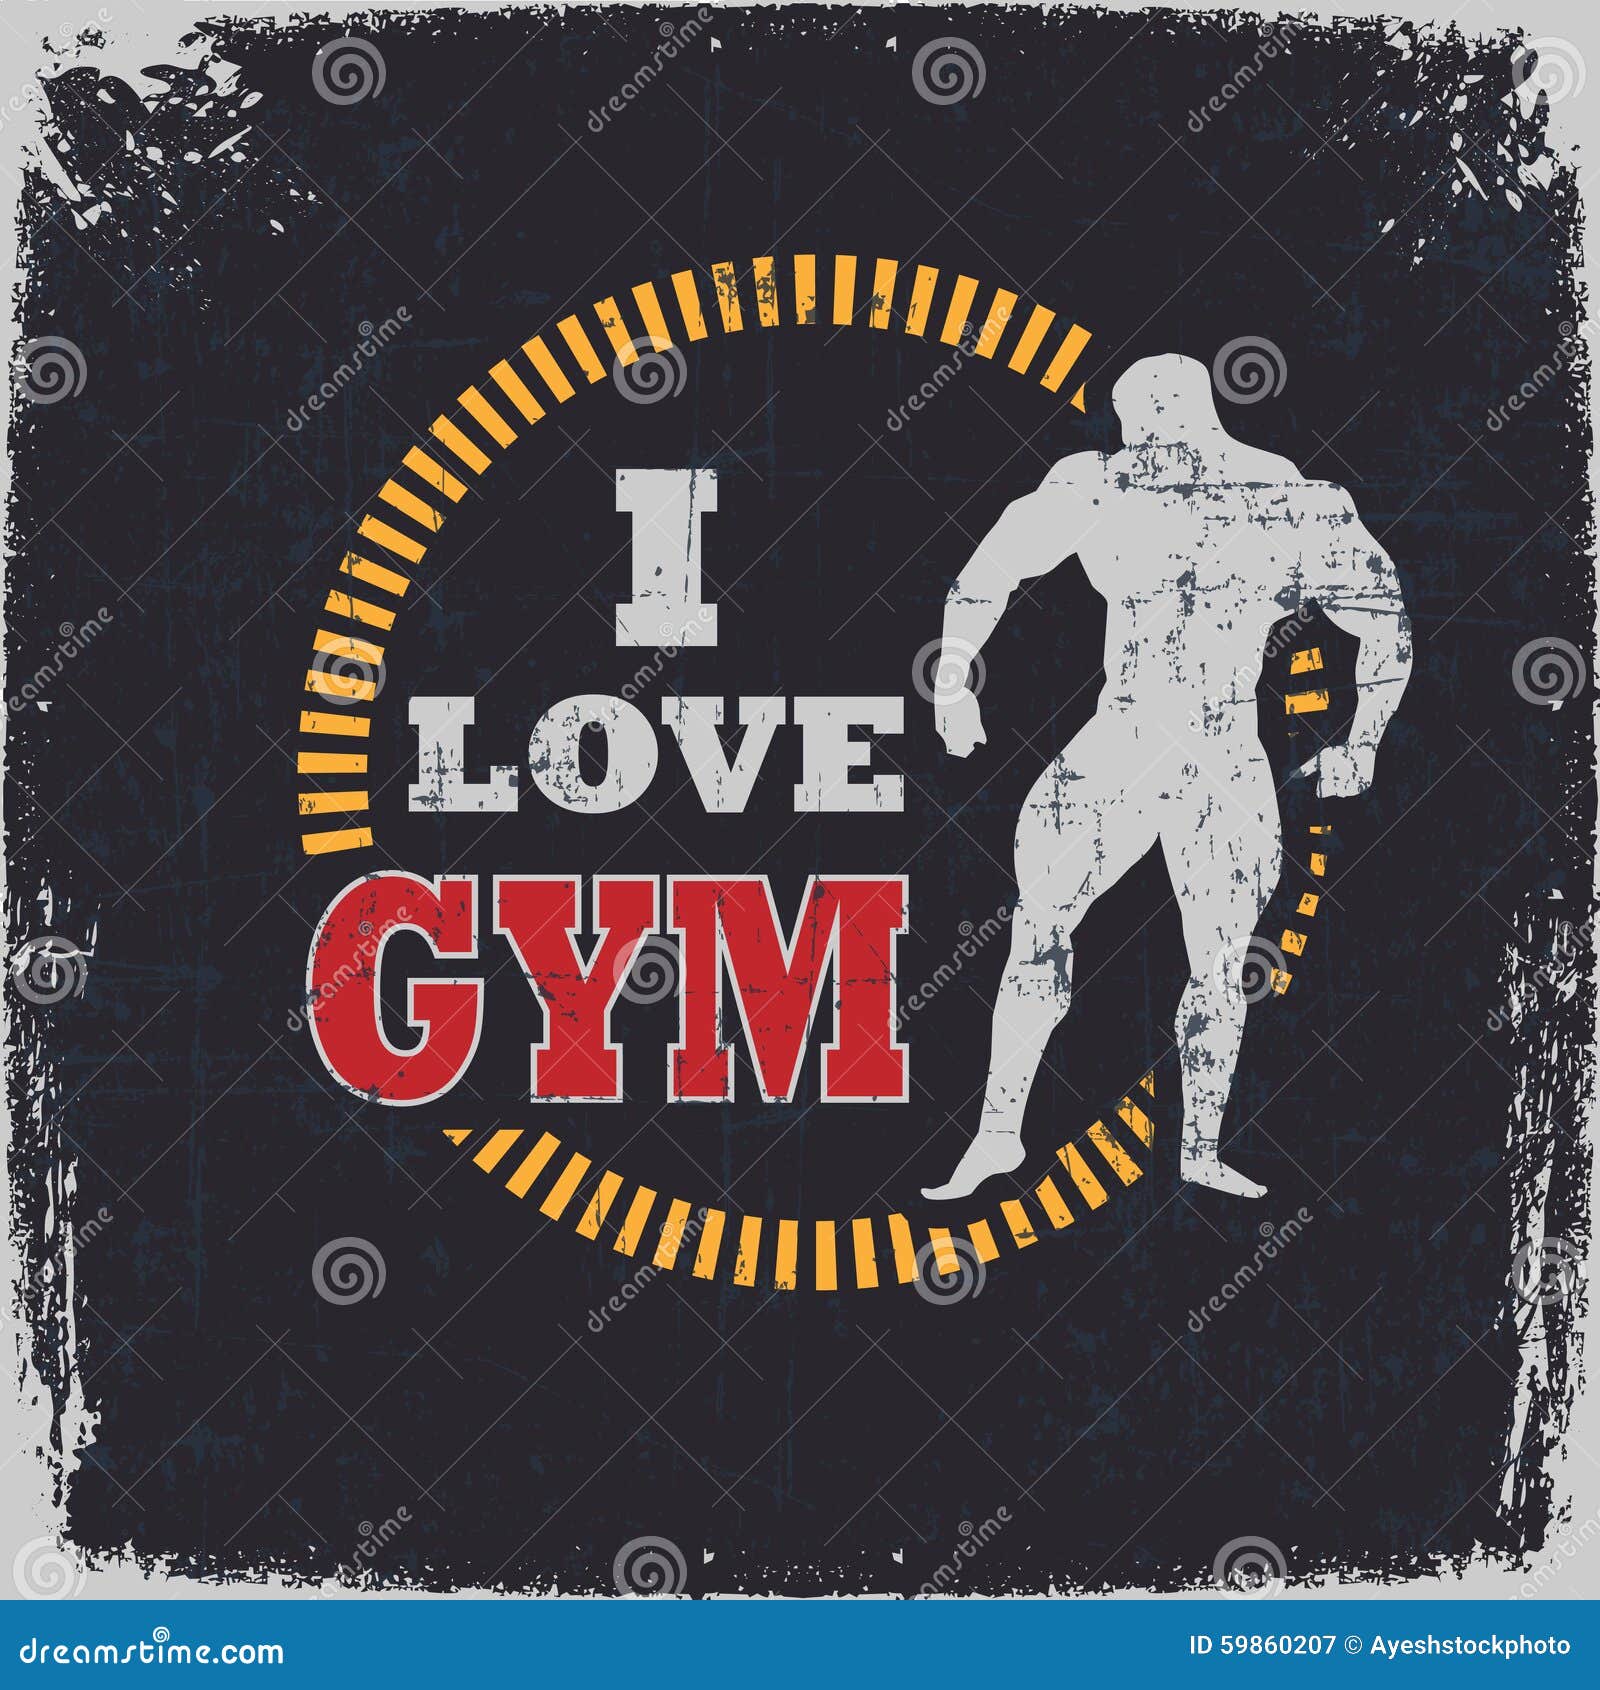 Джим лове. Я люблю Gym. Тренажерный зал логотип. Надпись i Love Gym. Картинки на Gym lover.